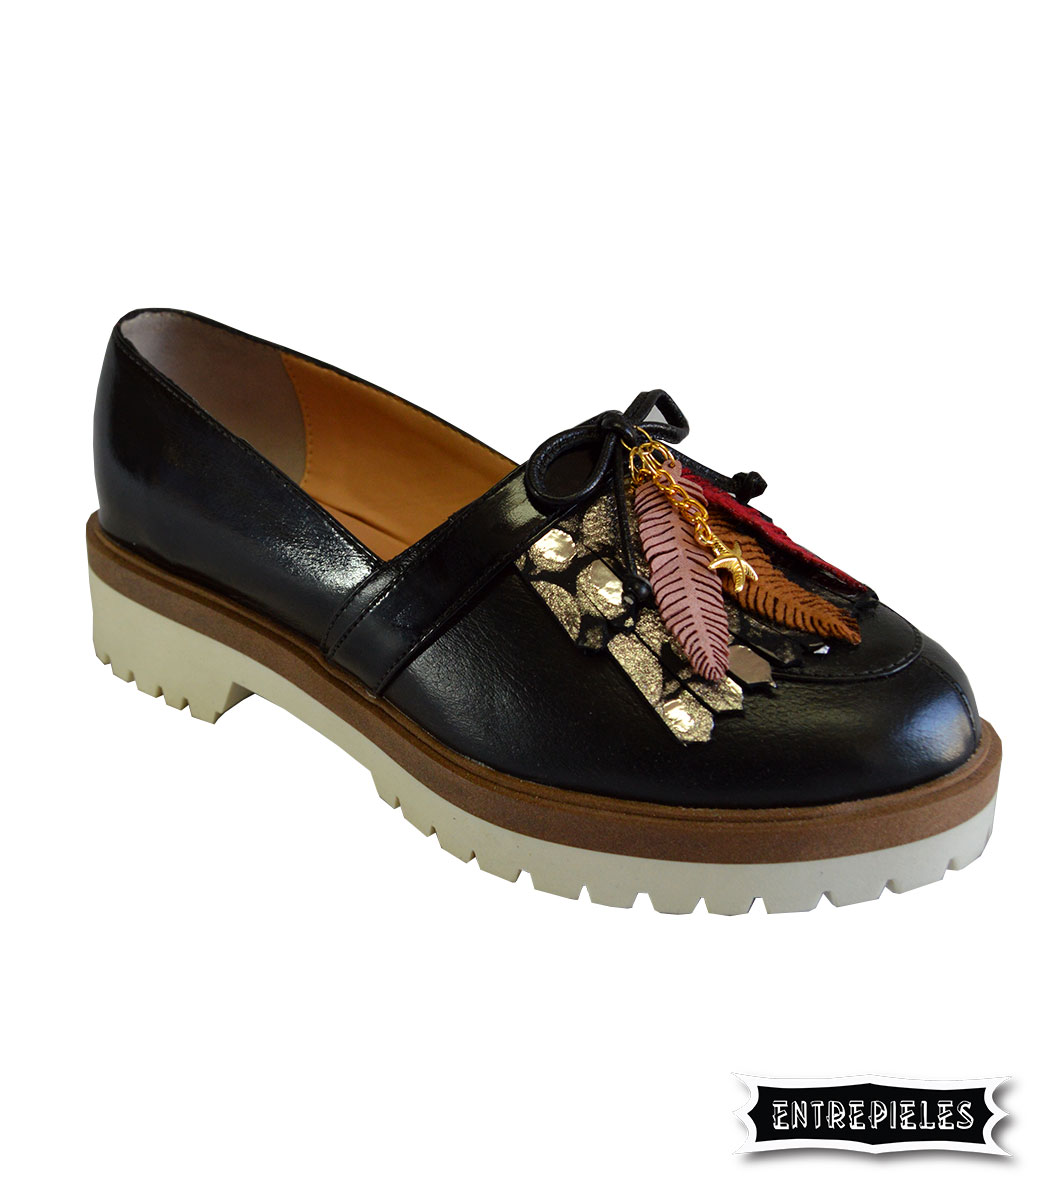 Zapatos en cuero para dama en cuero 100% colombiano - Personalizados.